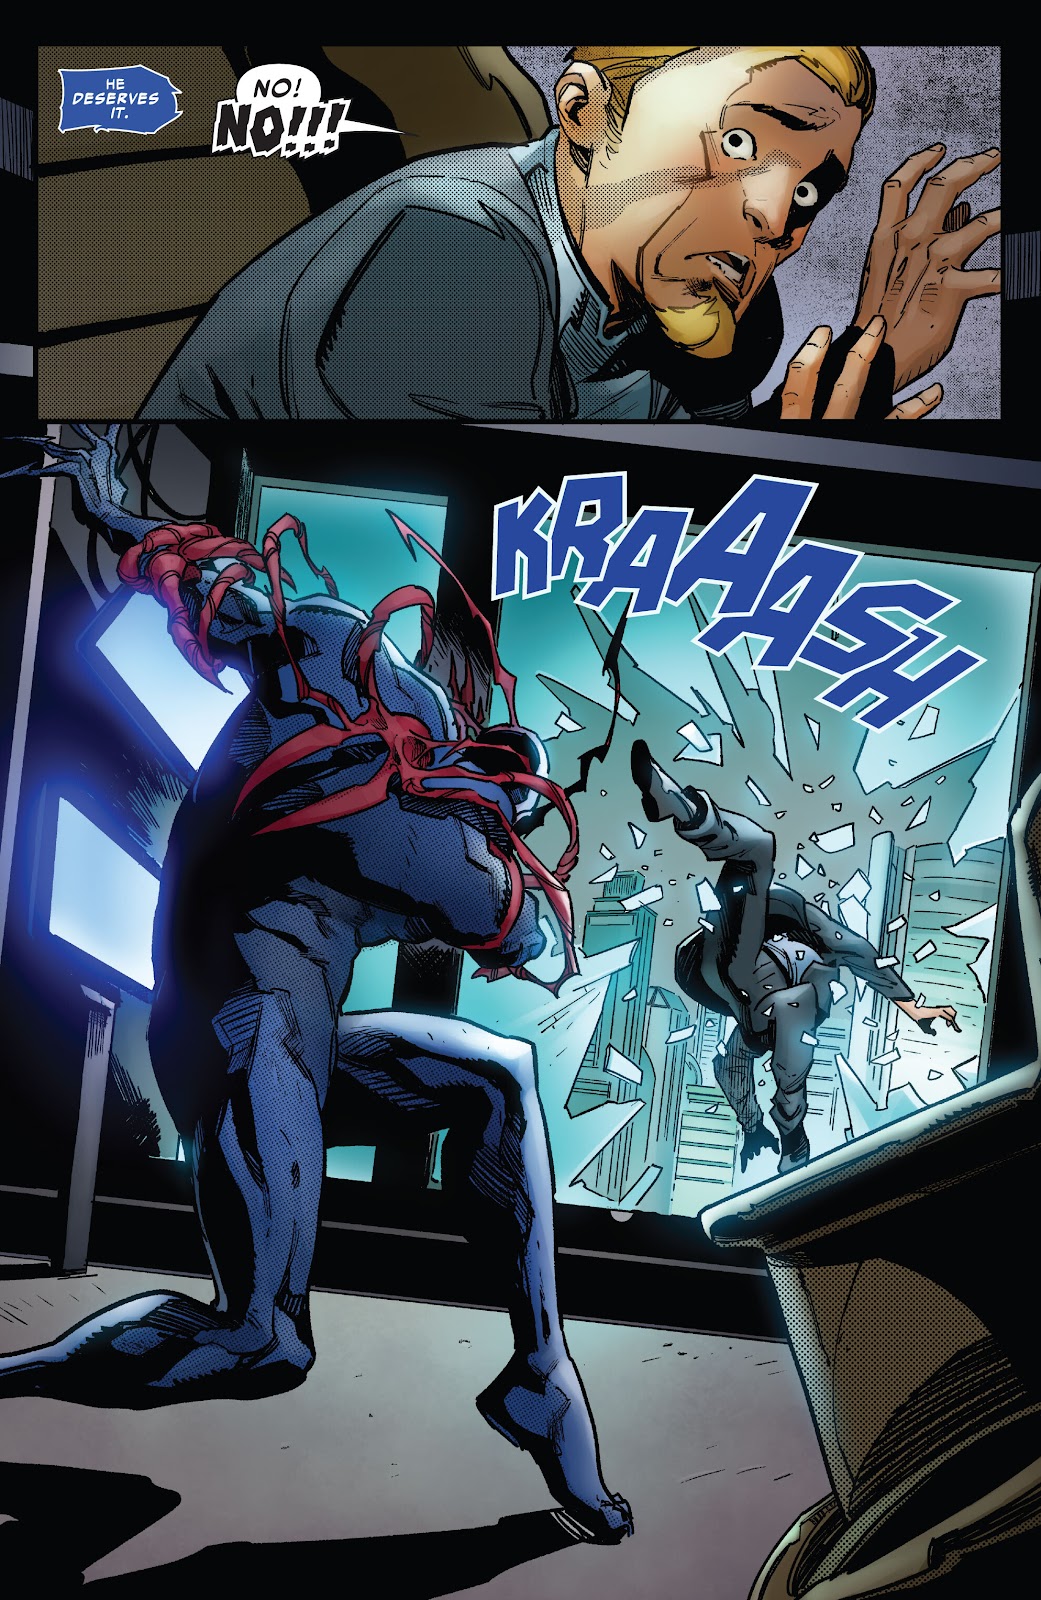 Symbiote Spider-Man 2099 issue 2 - Page 21